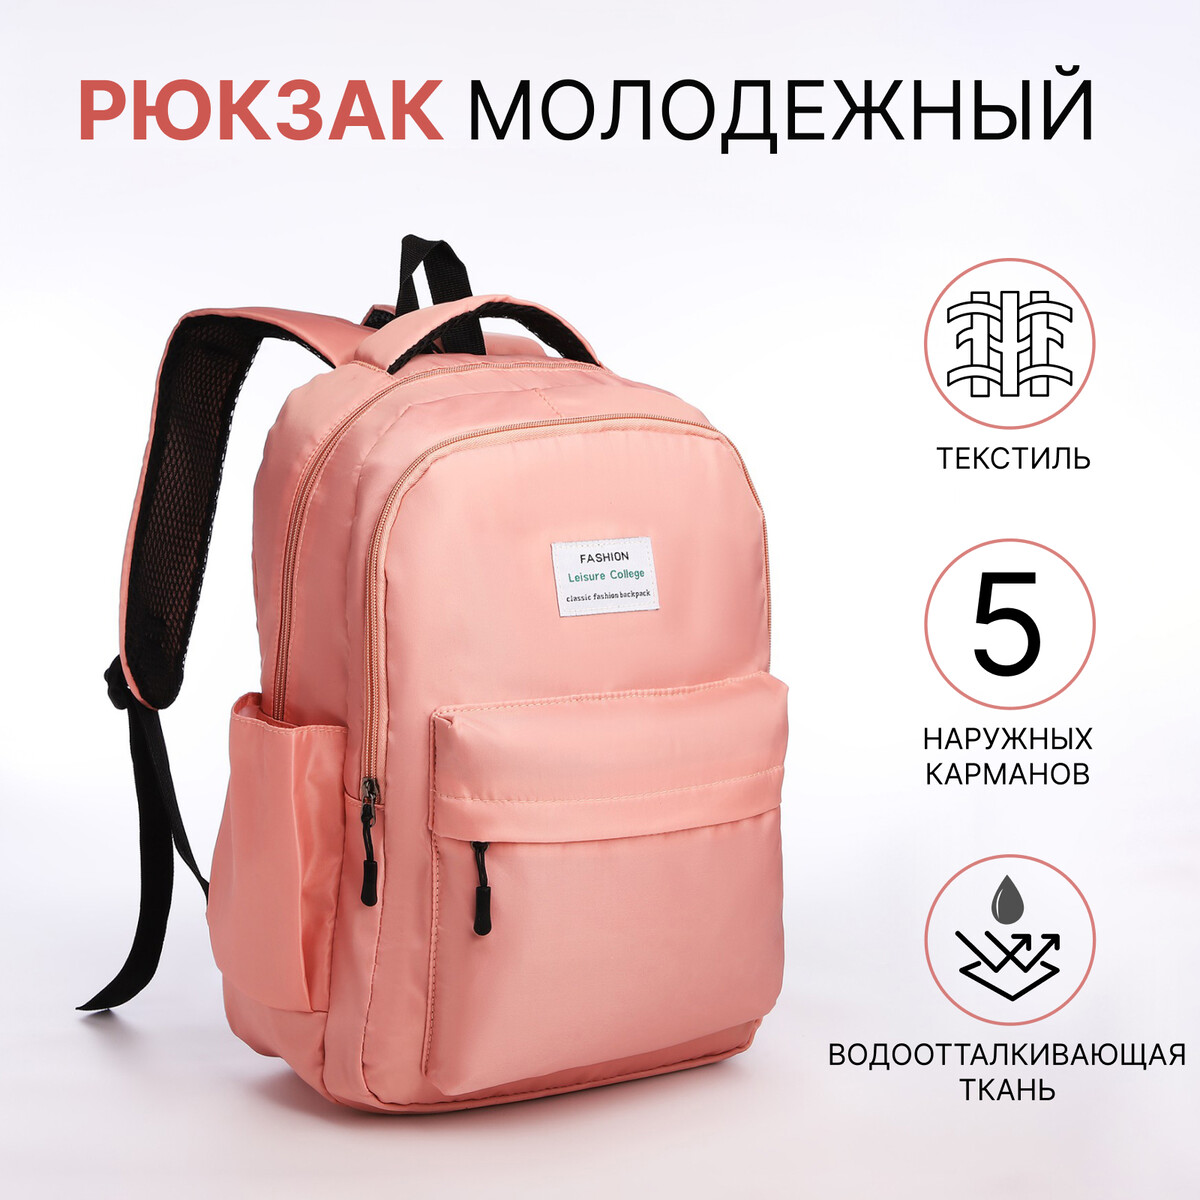 Рюкзак молодежный из текстиля на молнии, 5 карманов, цвет розовый рюкзак молодежный из текстиля на молнии 5 карманов зеленый